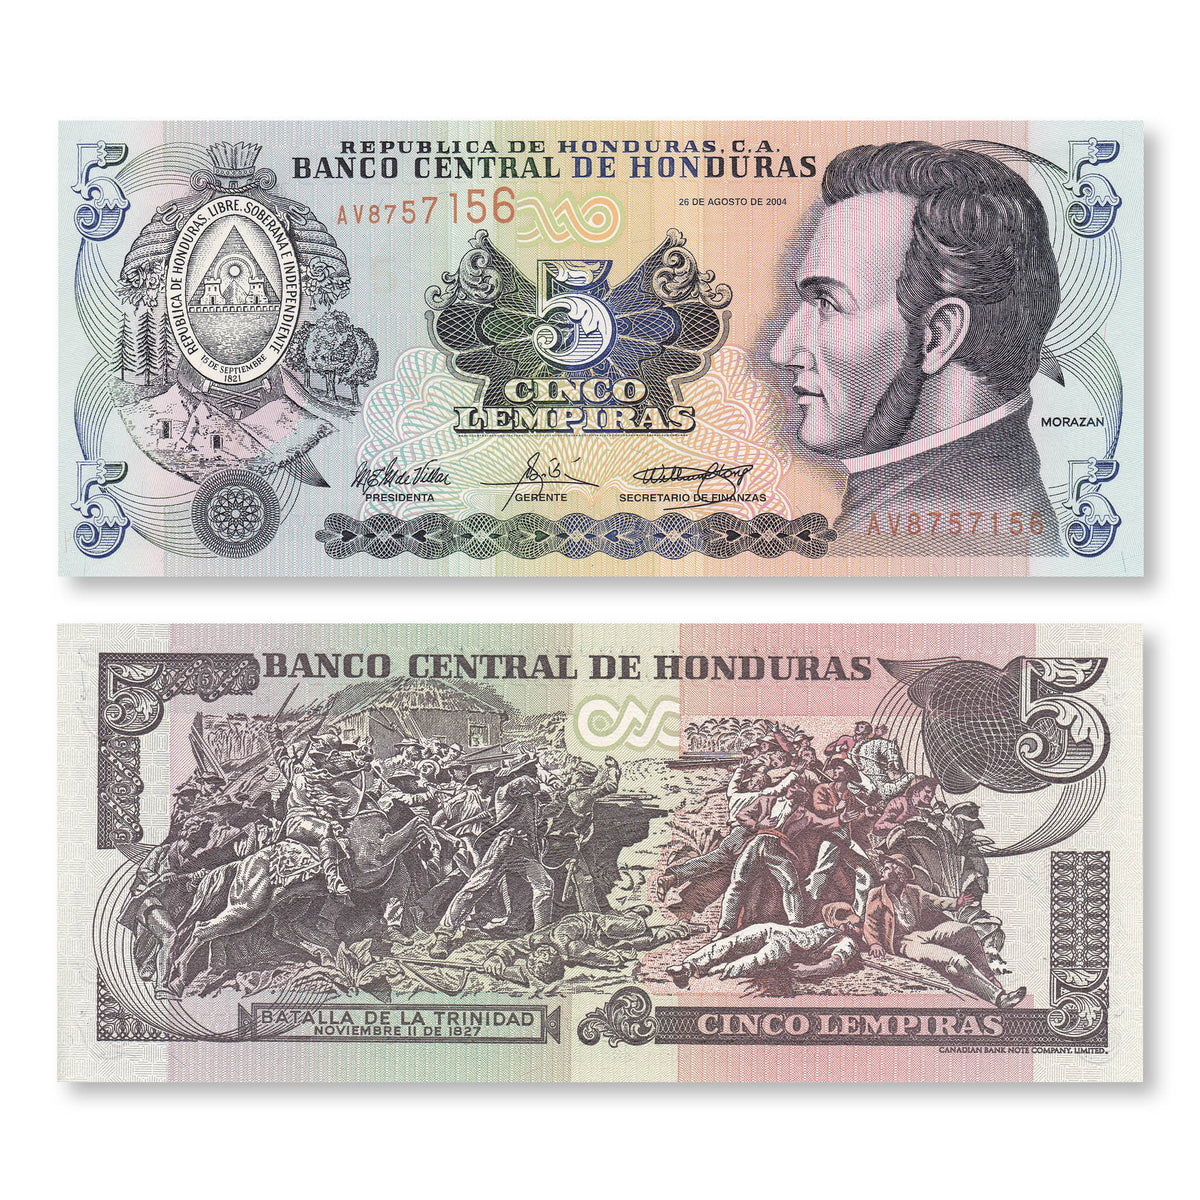 Honduras 5 Lempiras, 2004, B328k, P85d, UNC - Robert's World Money - World Banknotes